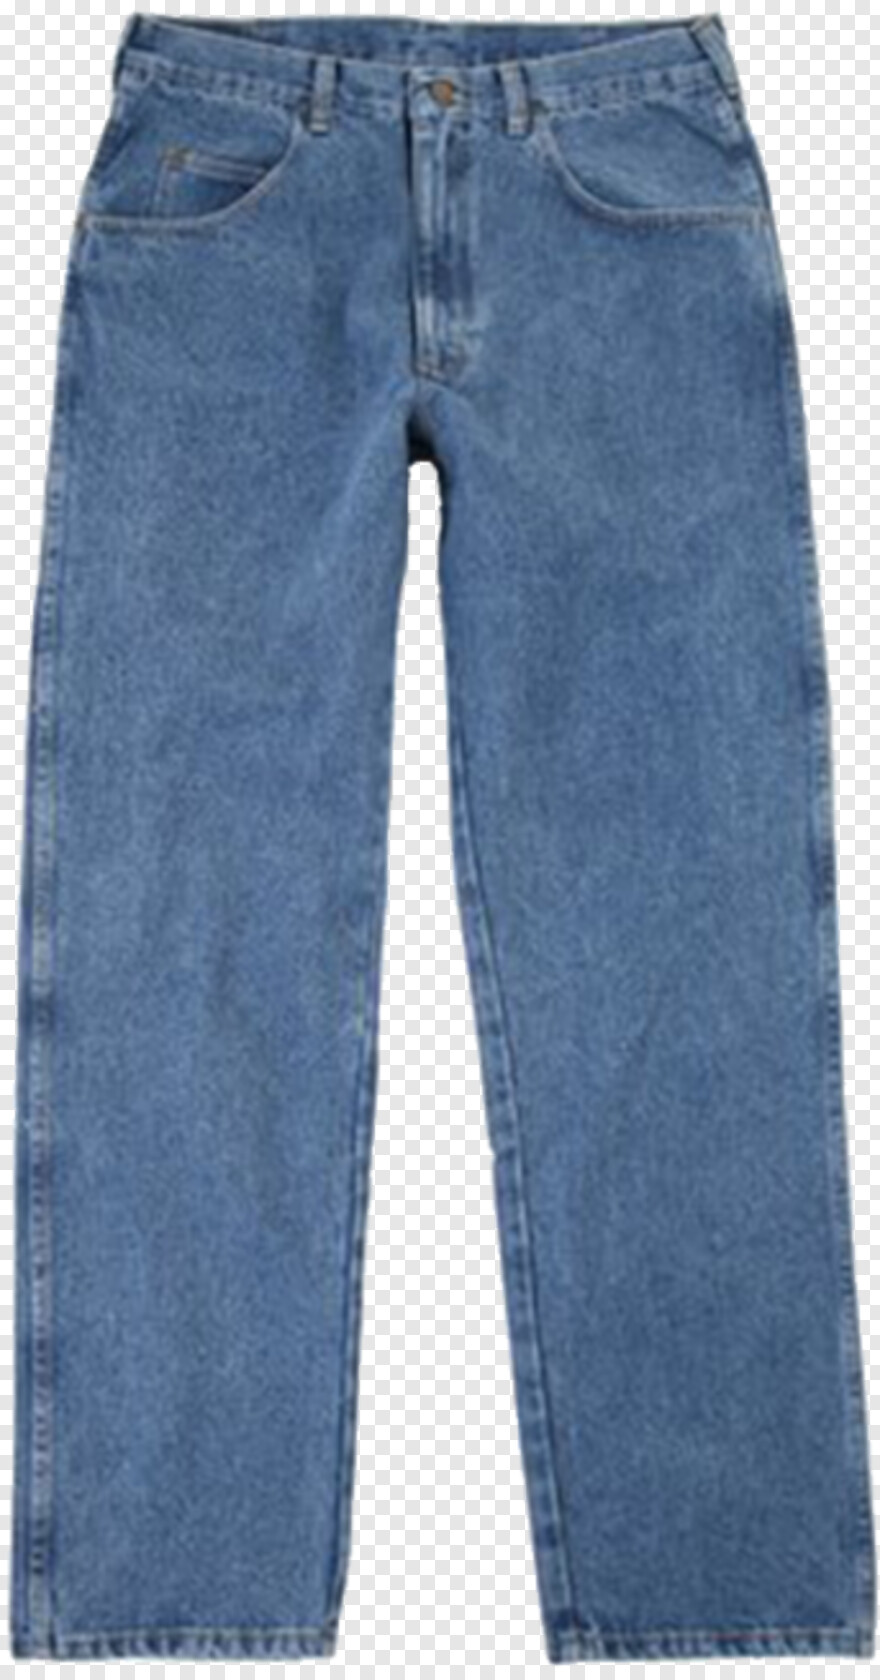 jeans-pant # 738553